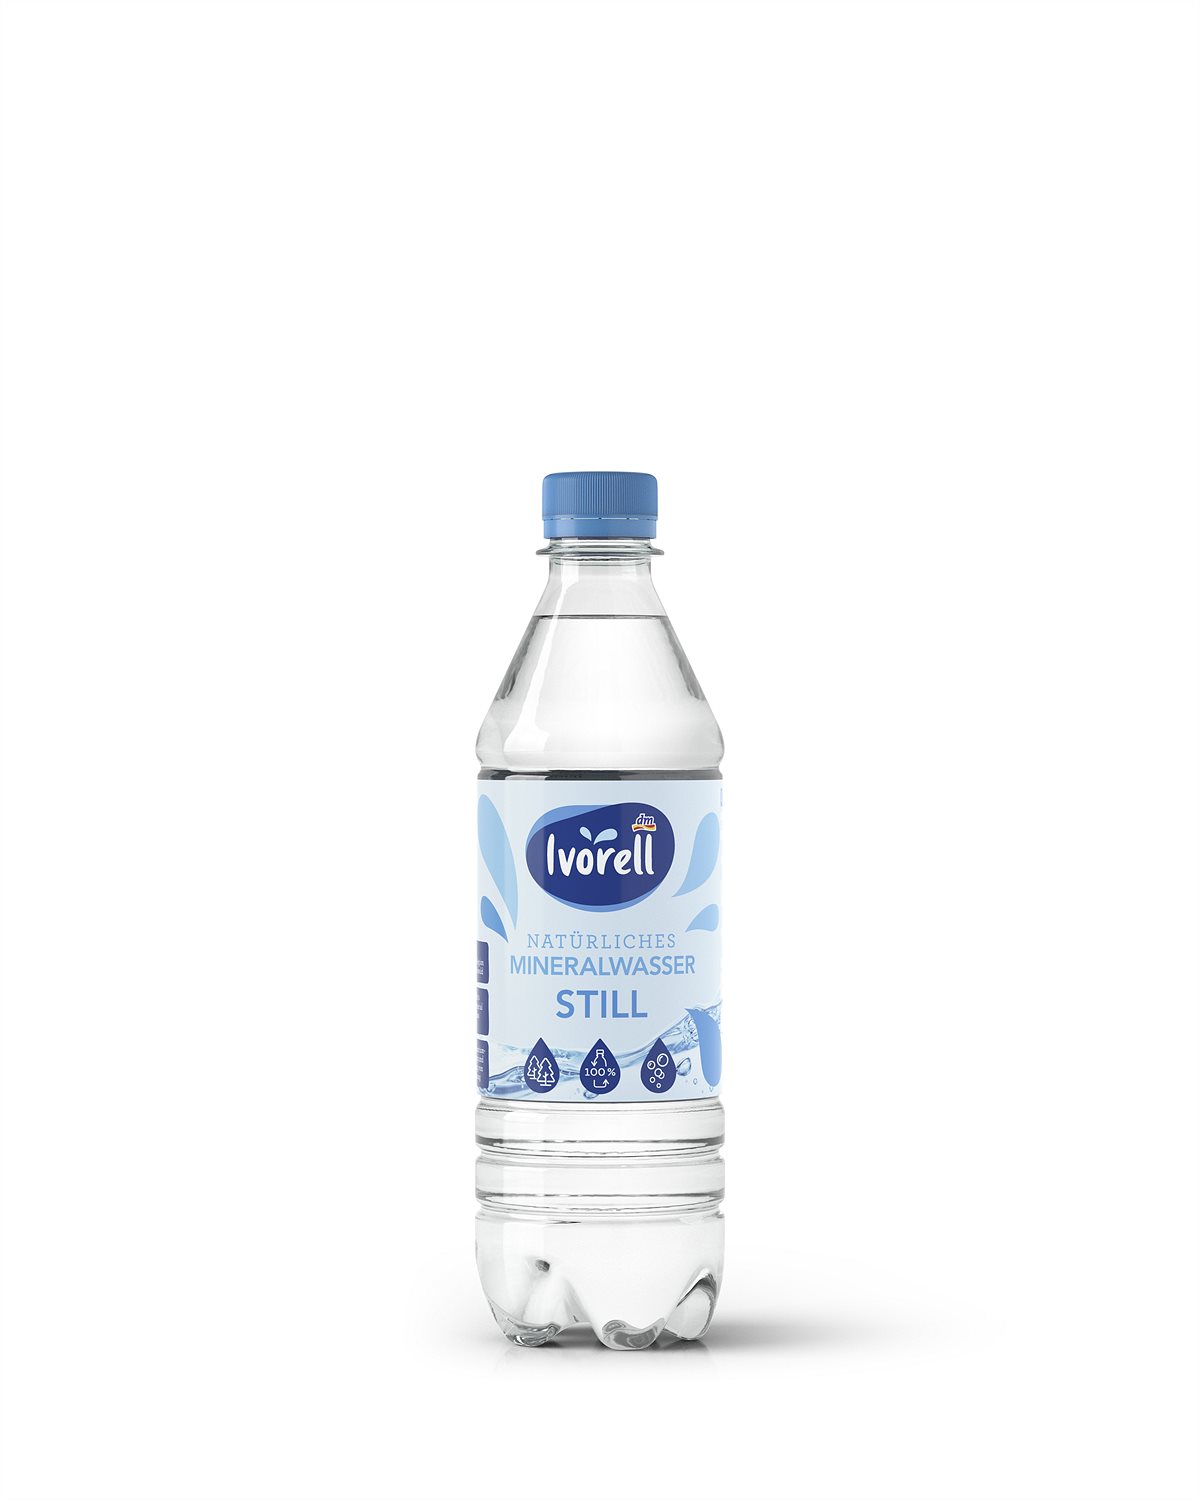 Natürliches Mineralwasser Still, 500 ml 0,45 Euro